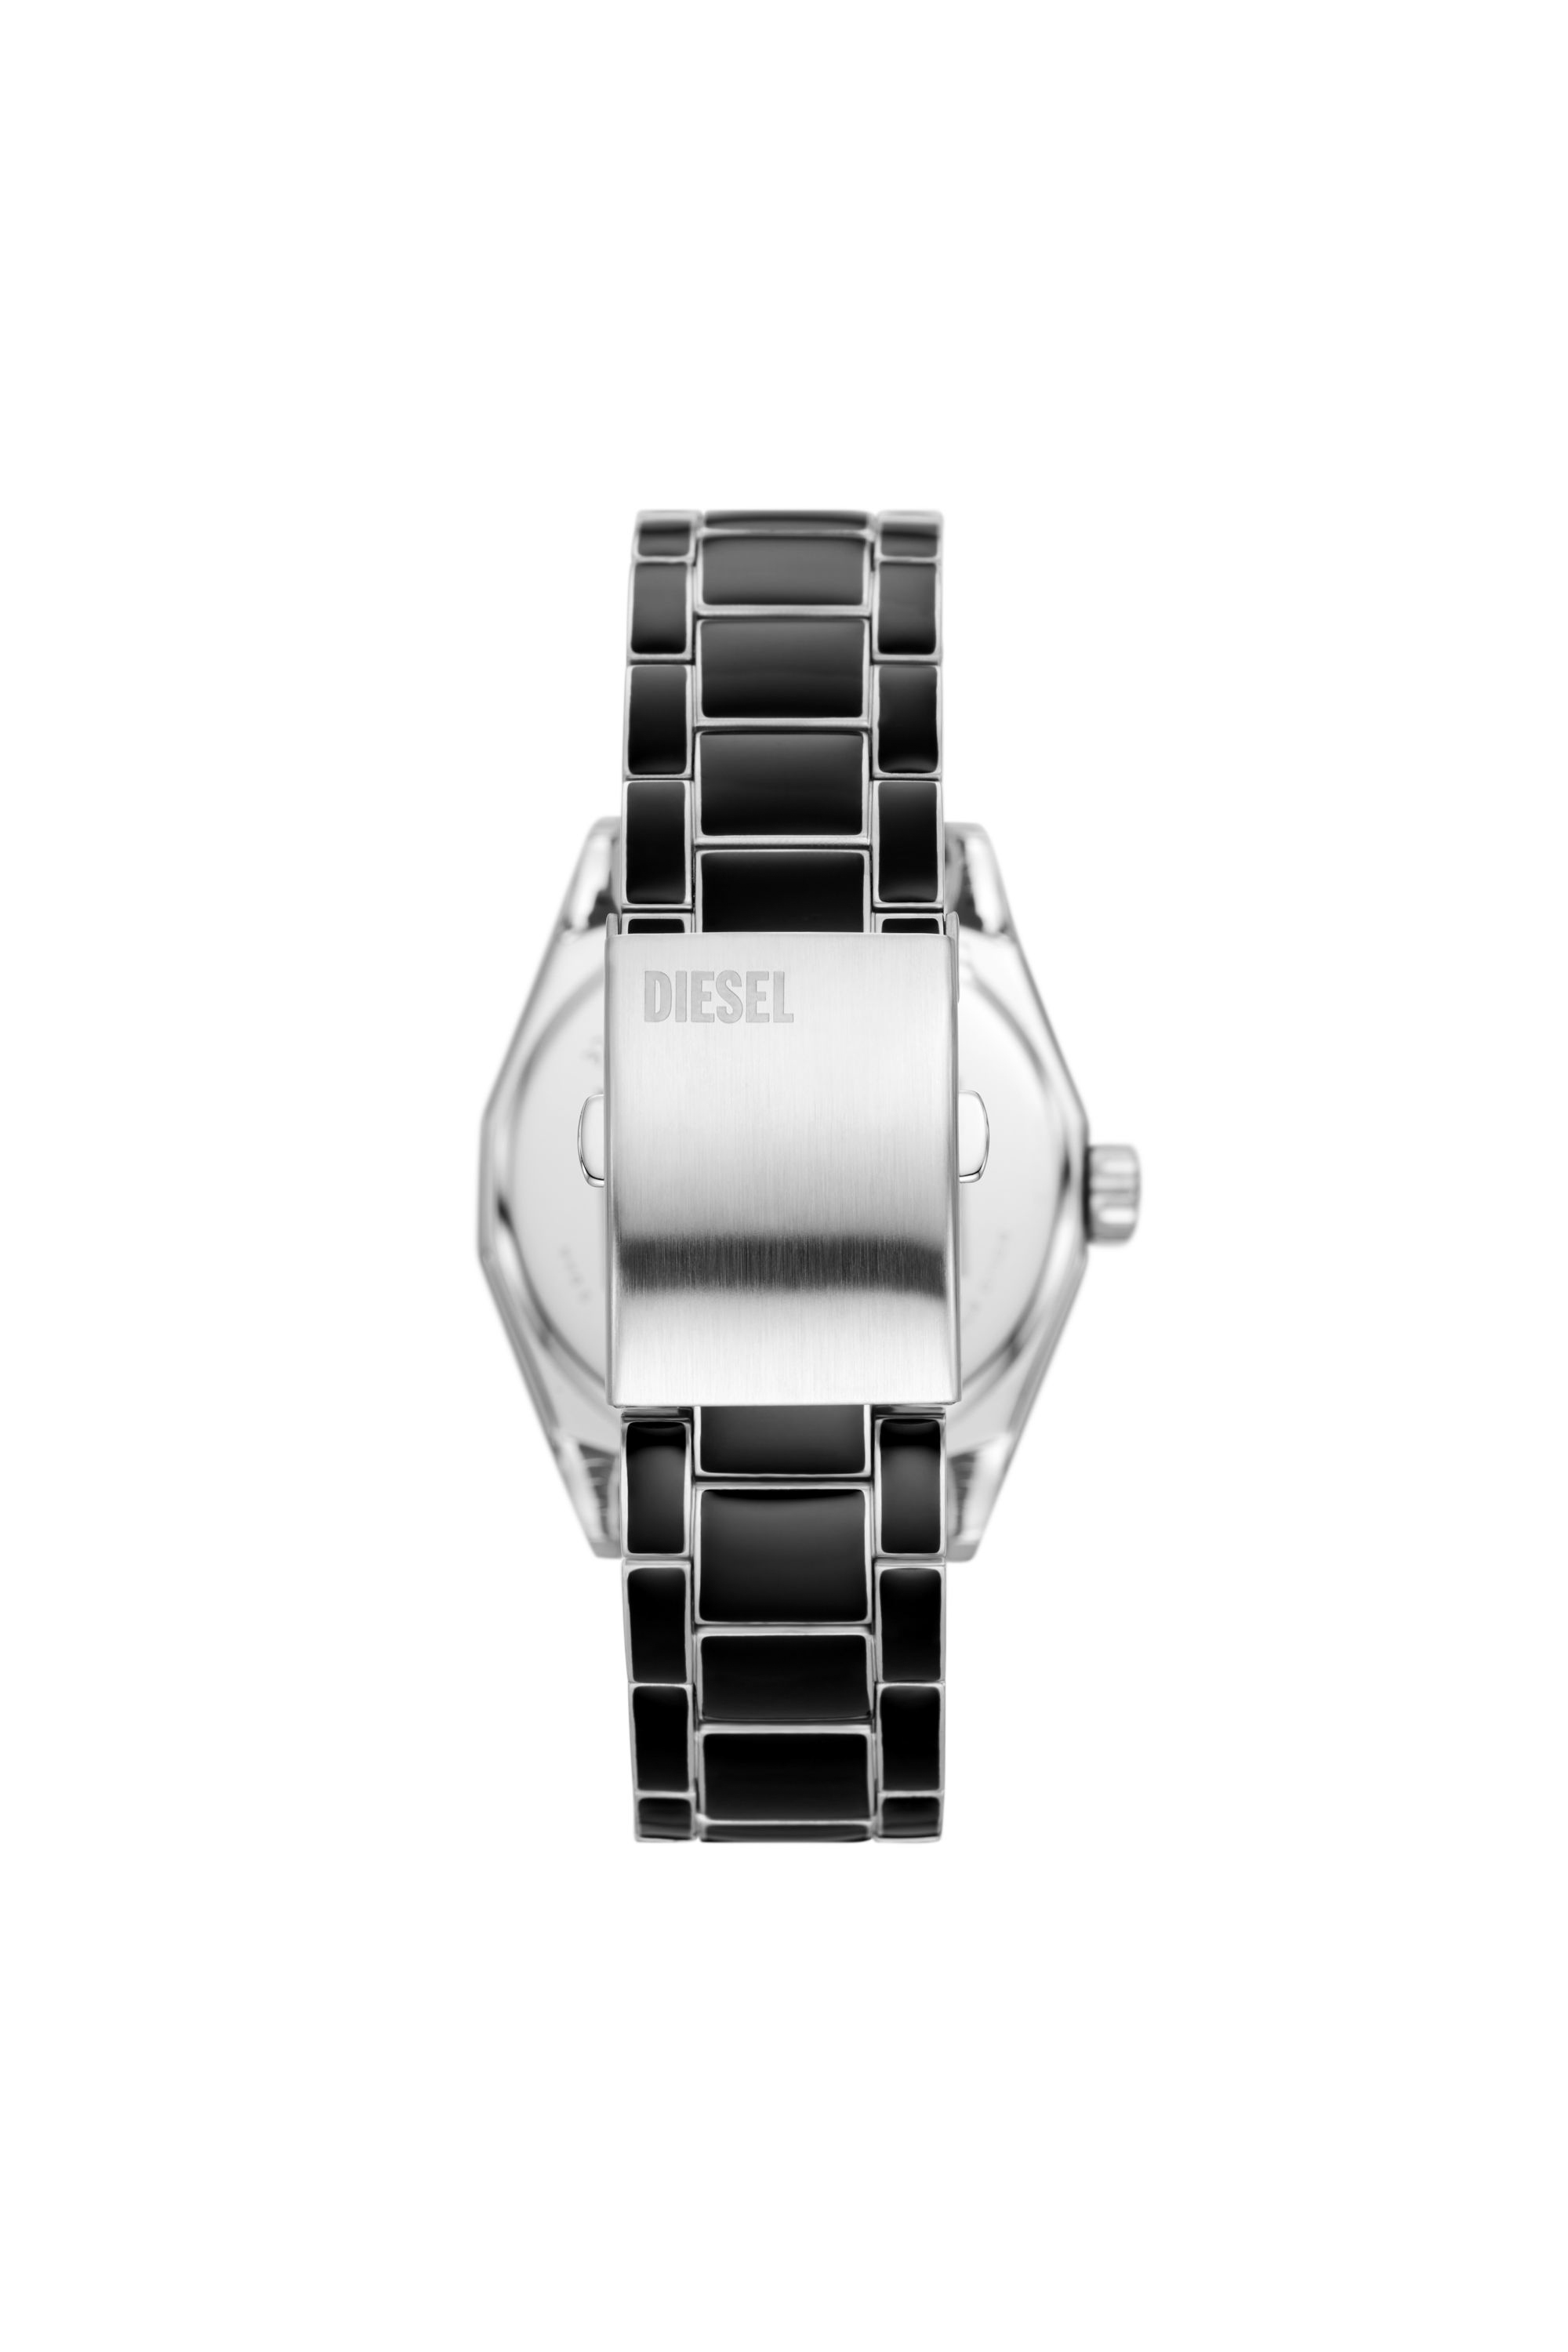 Diesel - DZ2195, Male Scraper black enamel and stainless steel watch in Black - Image 2